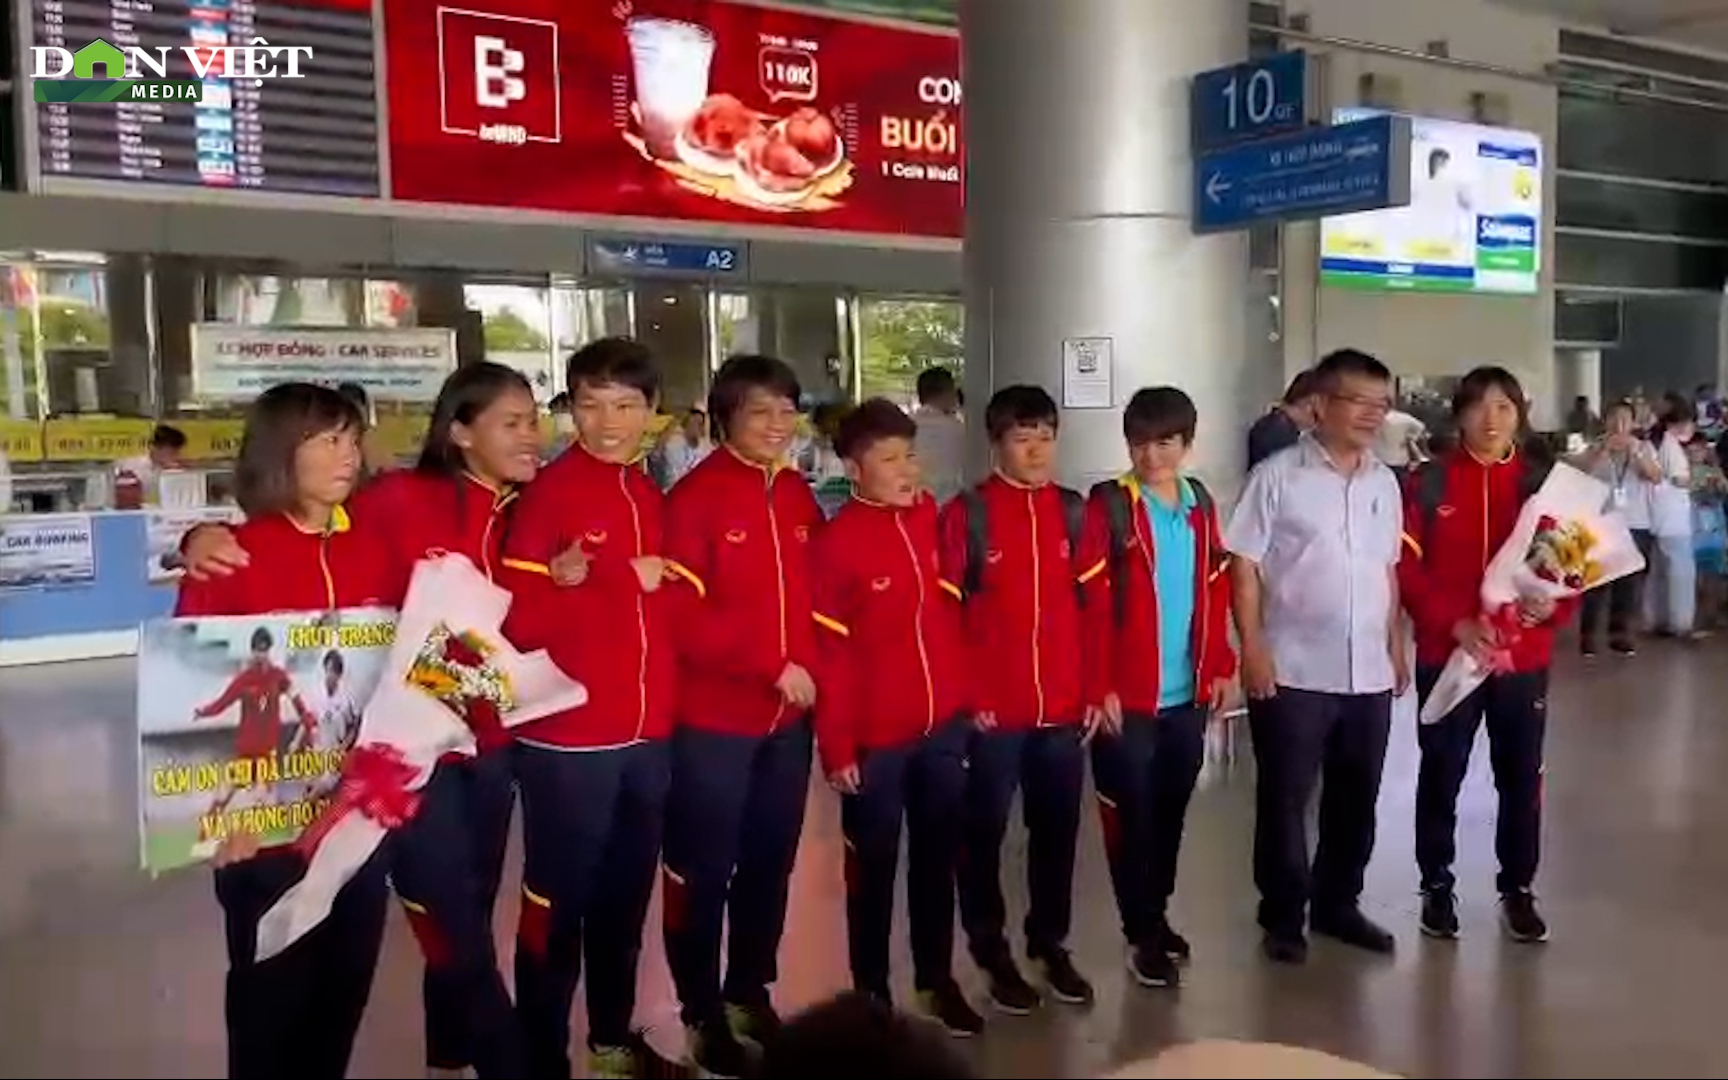 Video: Trở về từ World Cup, thủ môn Kim Thanh nói gì sau màn thể hiện nổi bật?